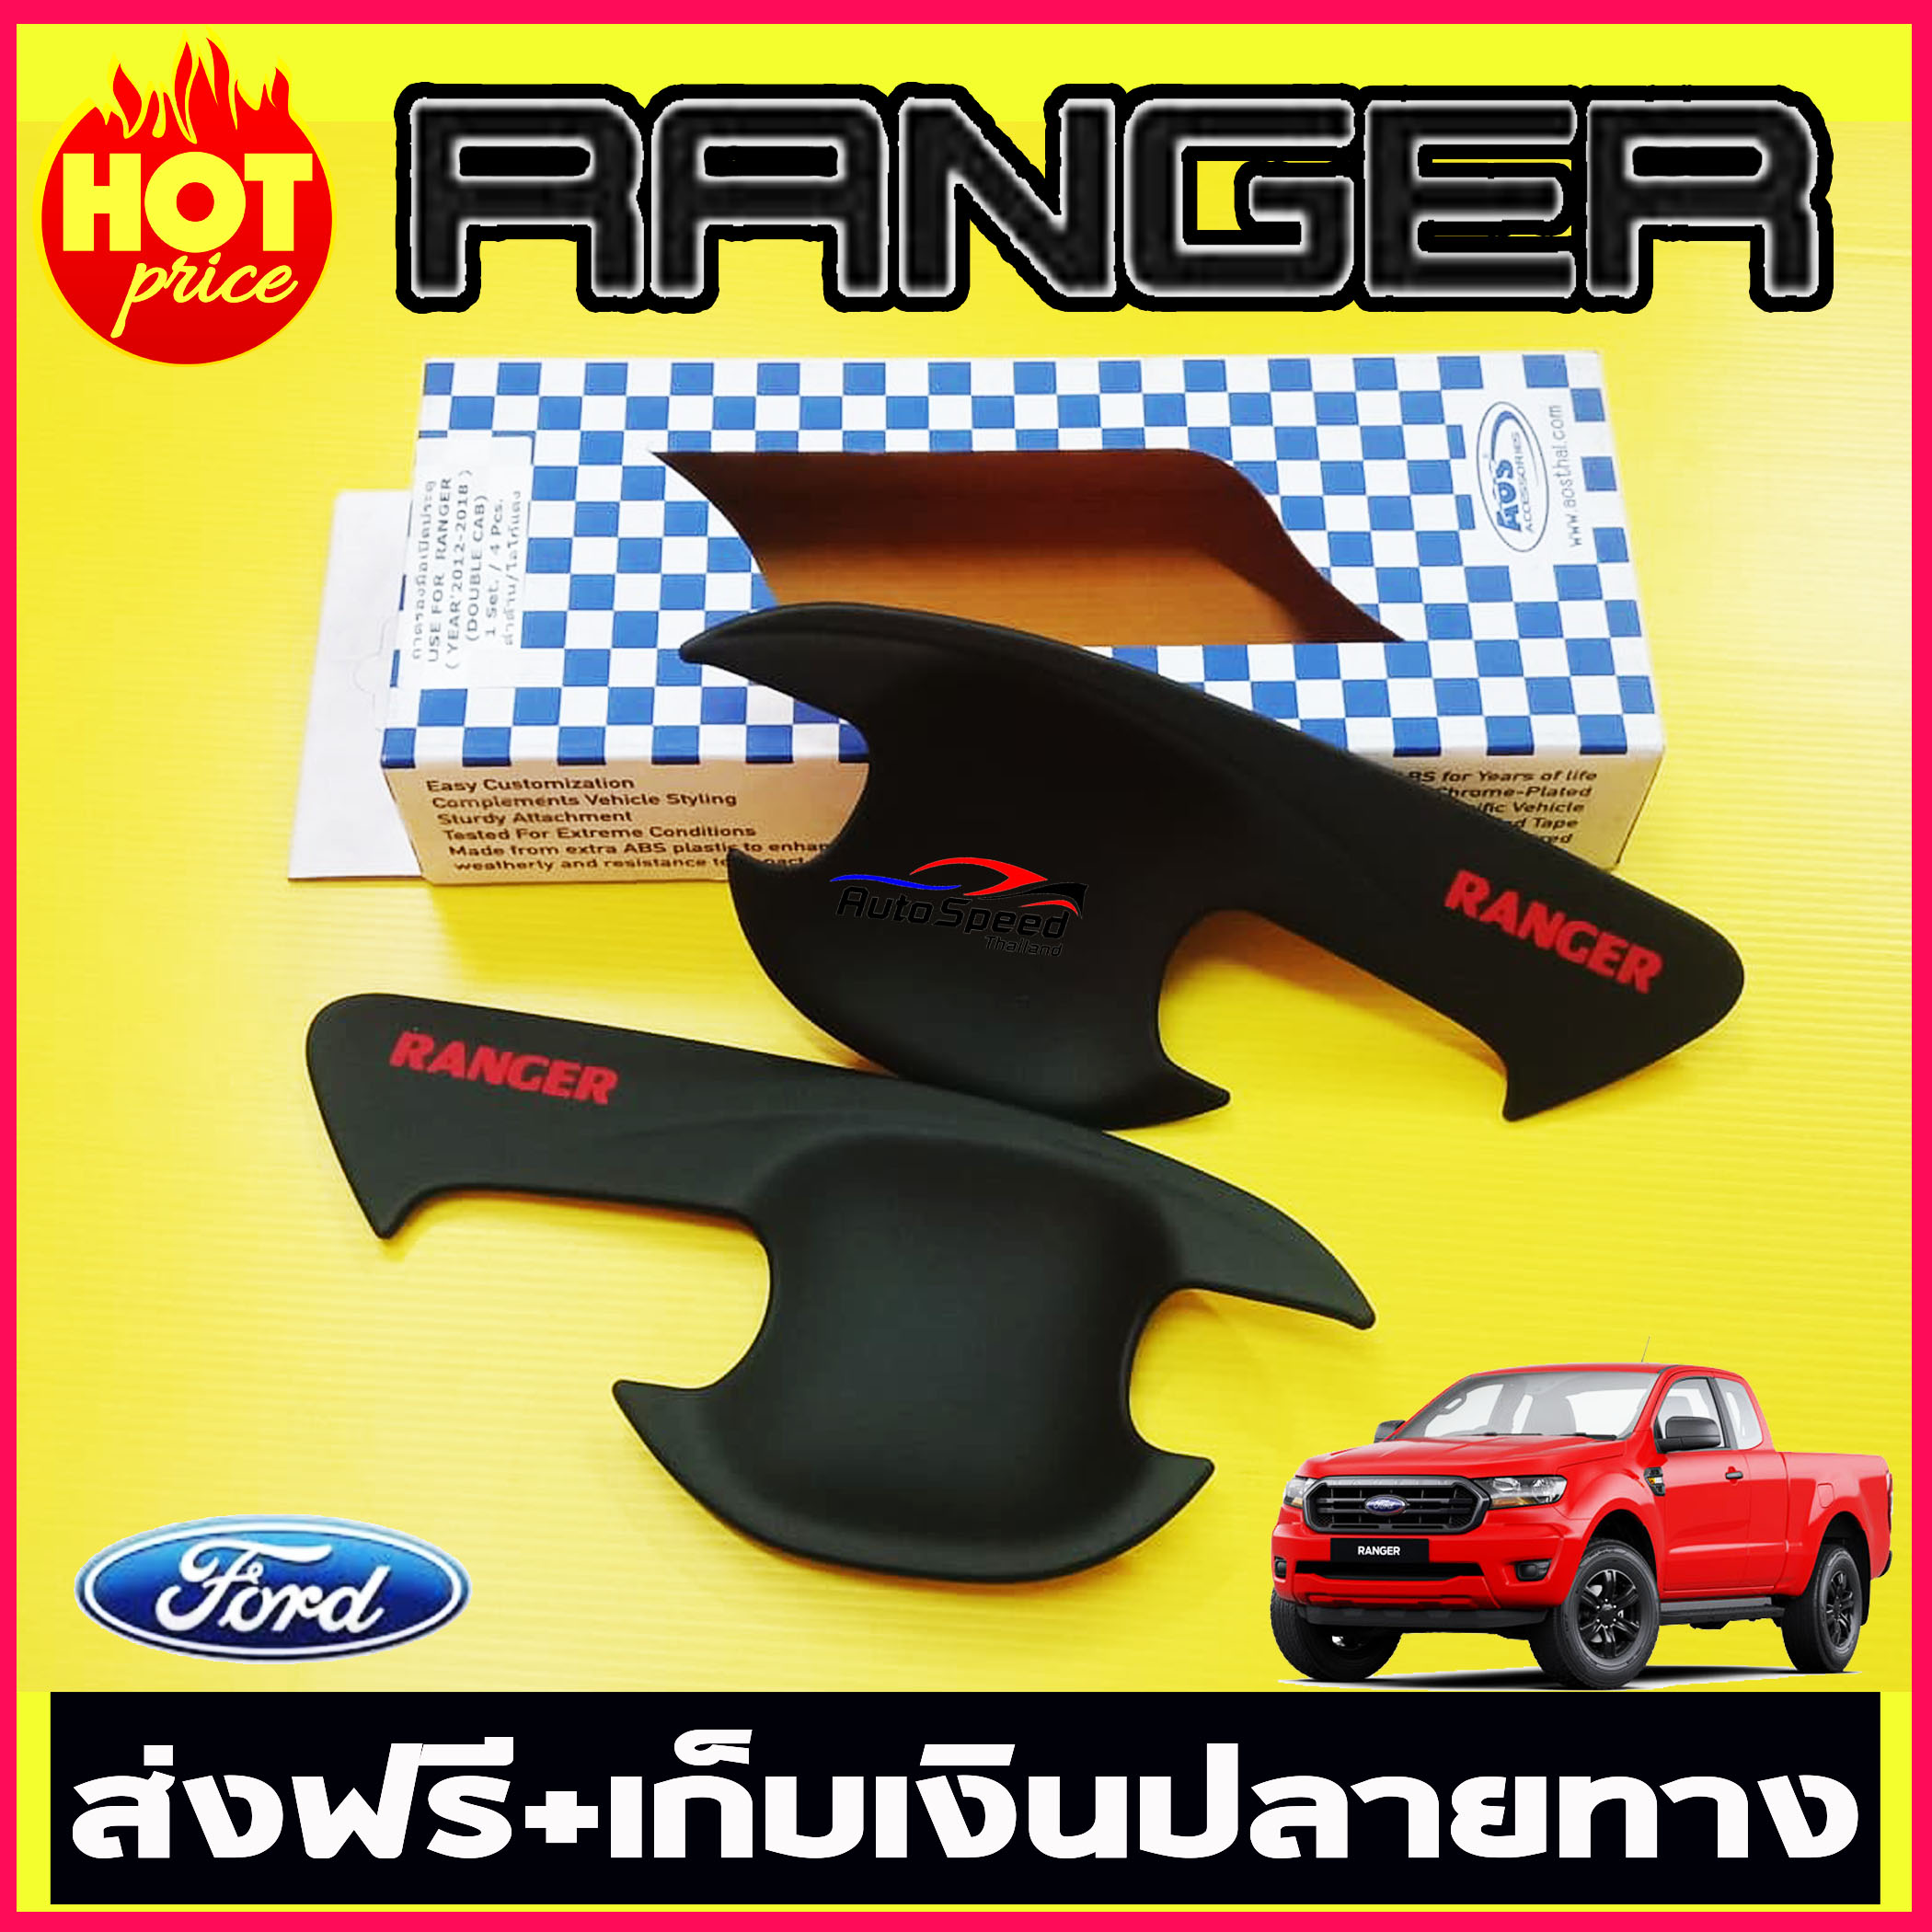 เบ้ามือจับประตู ฟอร์ด เรนเจอร์ Ford Ranger 2012-2019 (2ประตู) สีดำด้านโลโก้แดง (AO)